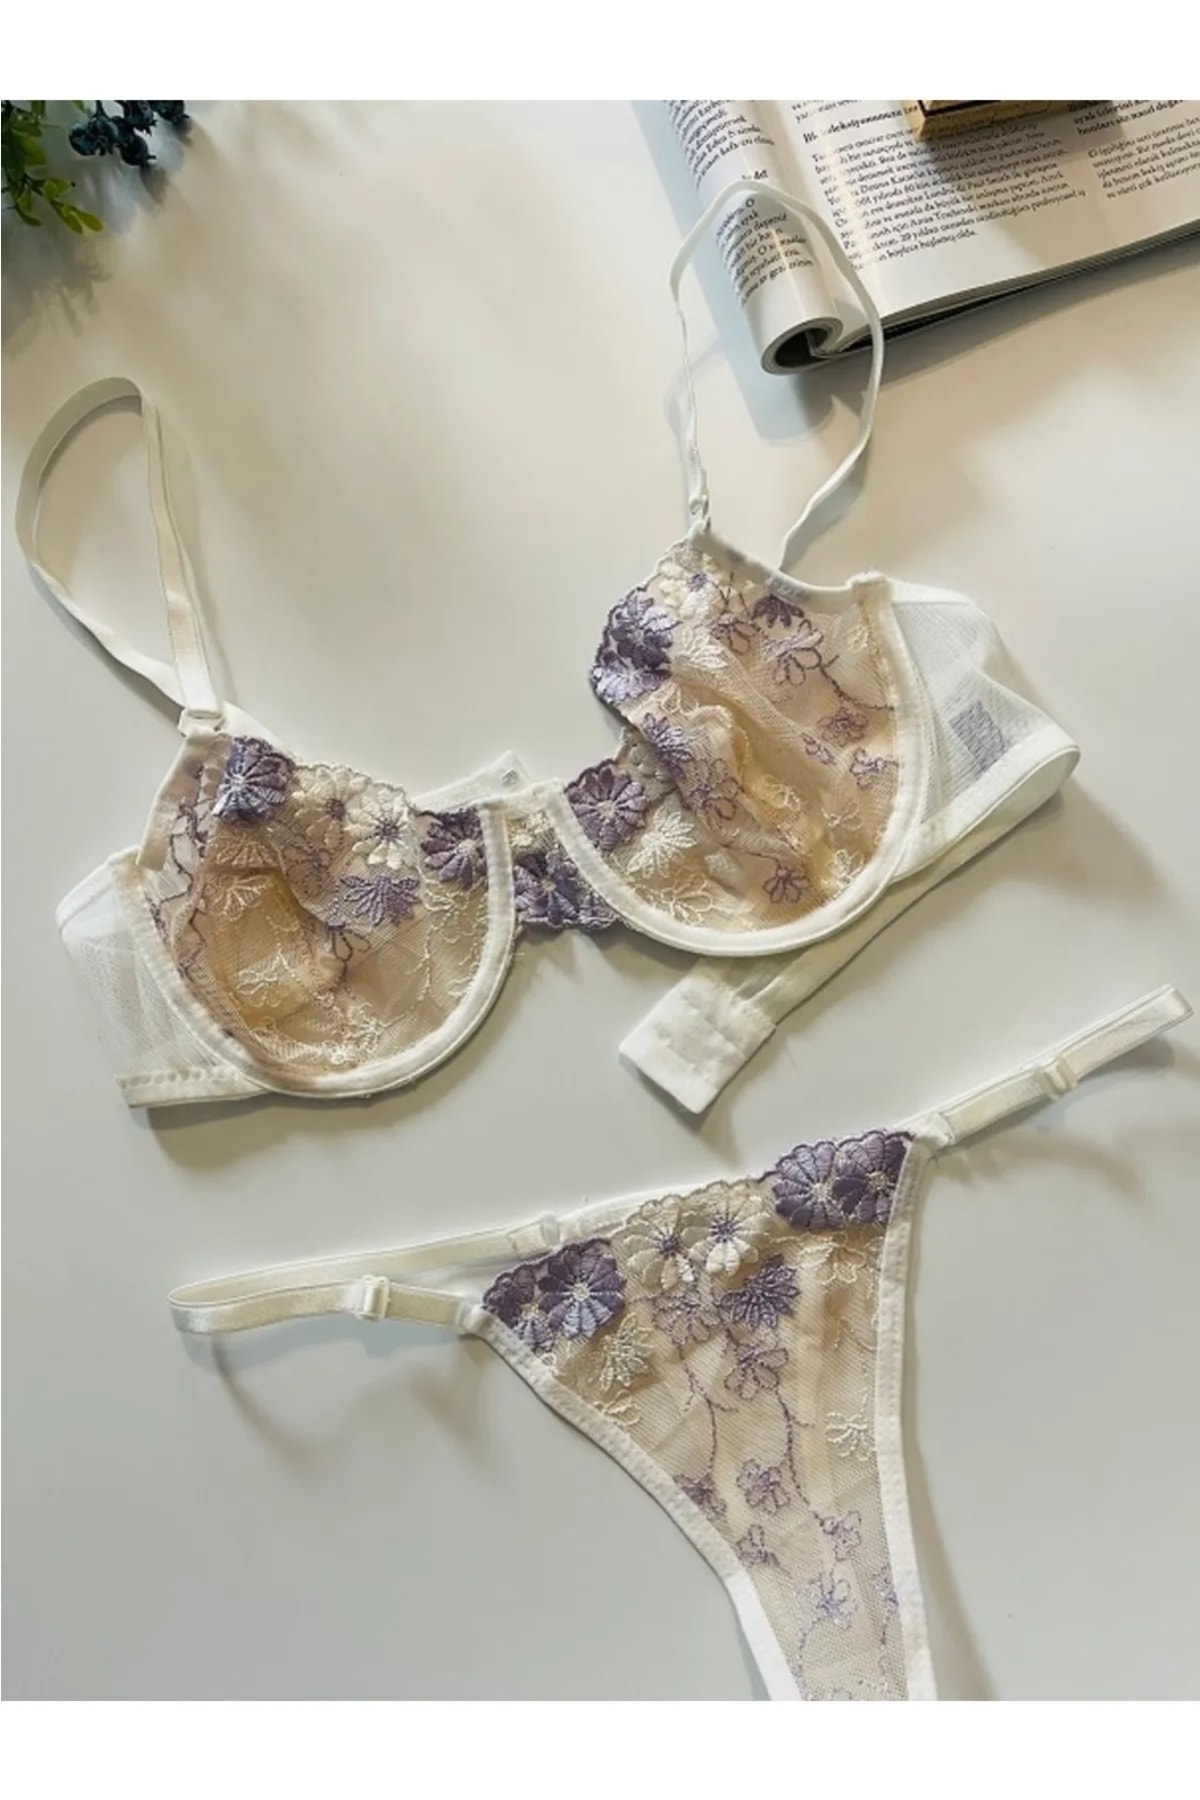 LucyGirls Kadın Seksi Fantezi Dantel Detaylı Çiçek Motifli Sütyen Külot String Iç Çamaşır Takımı